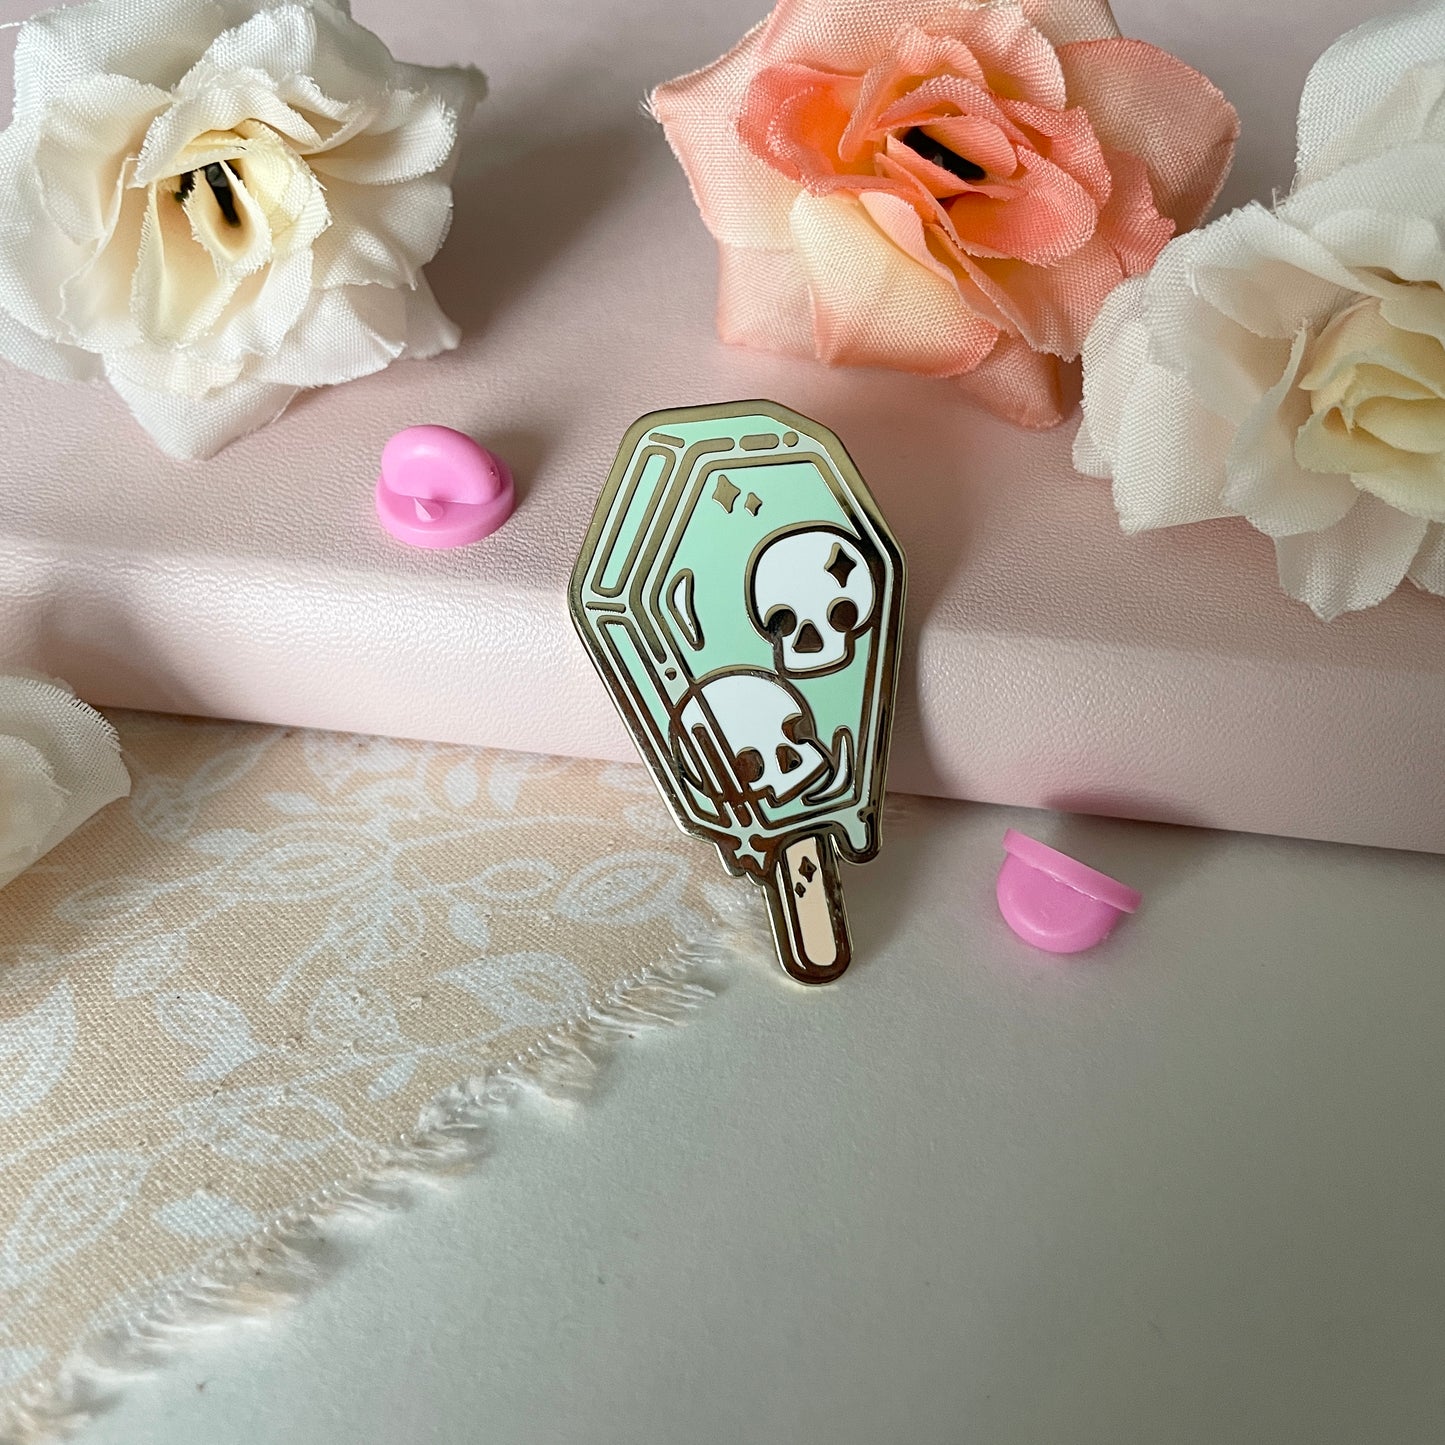 Spooky Popsicle Skull Enamel Pin